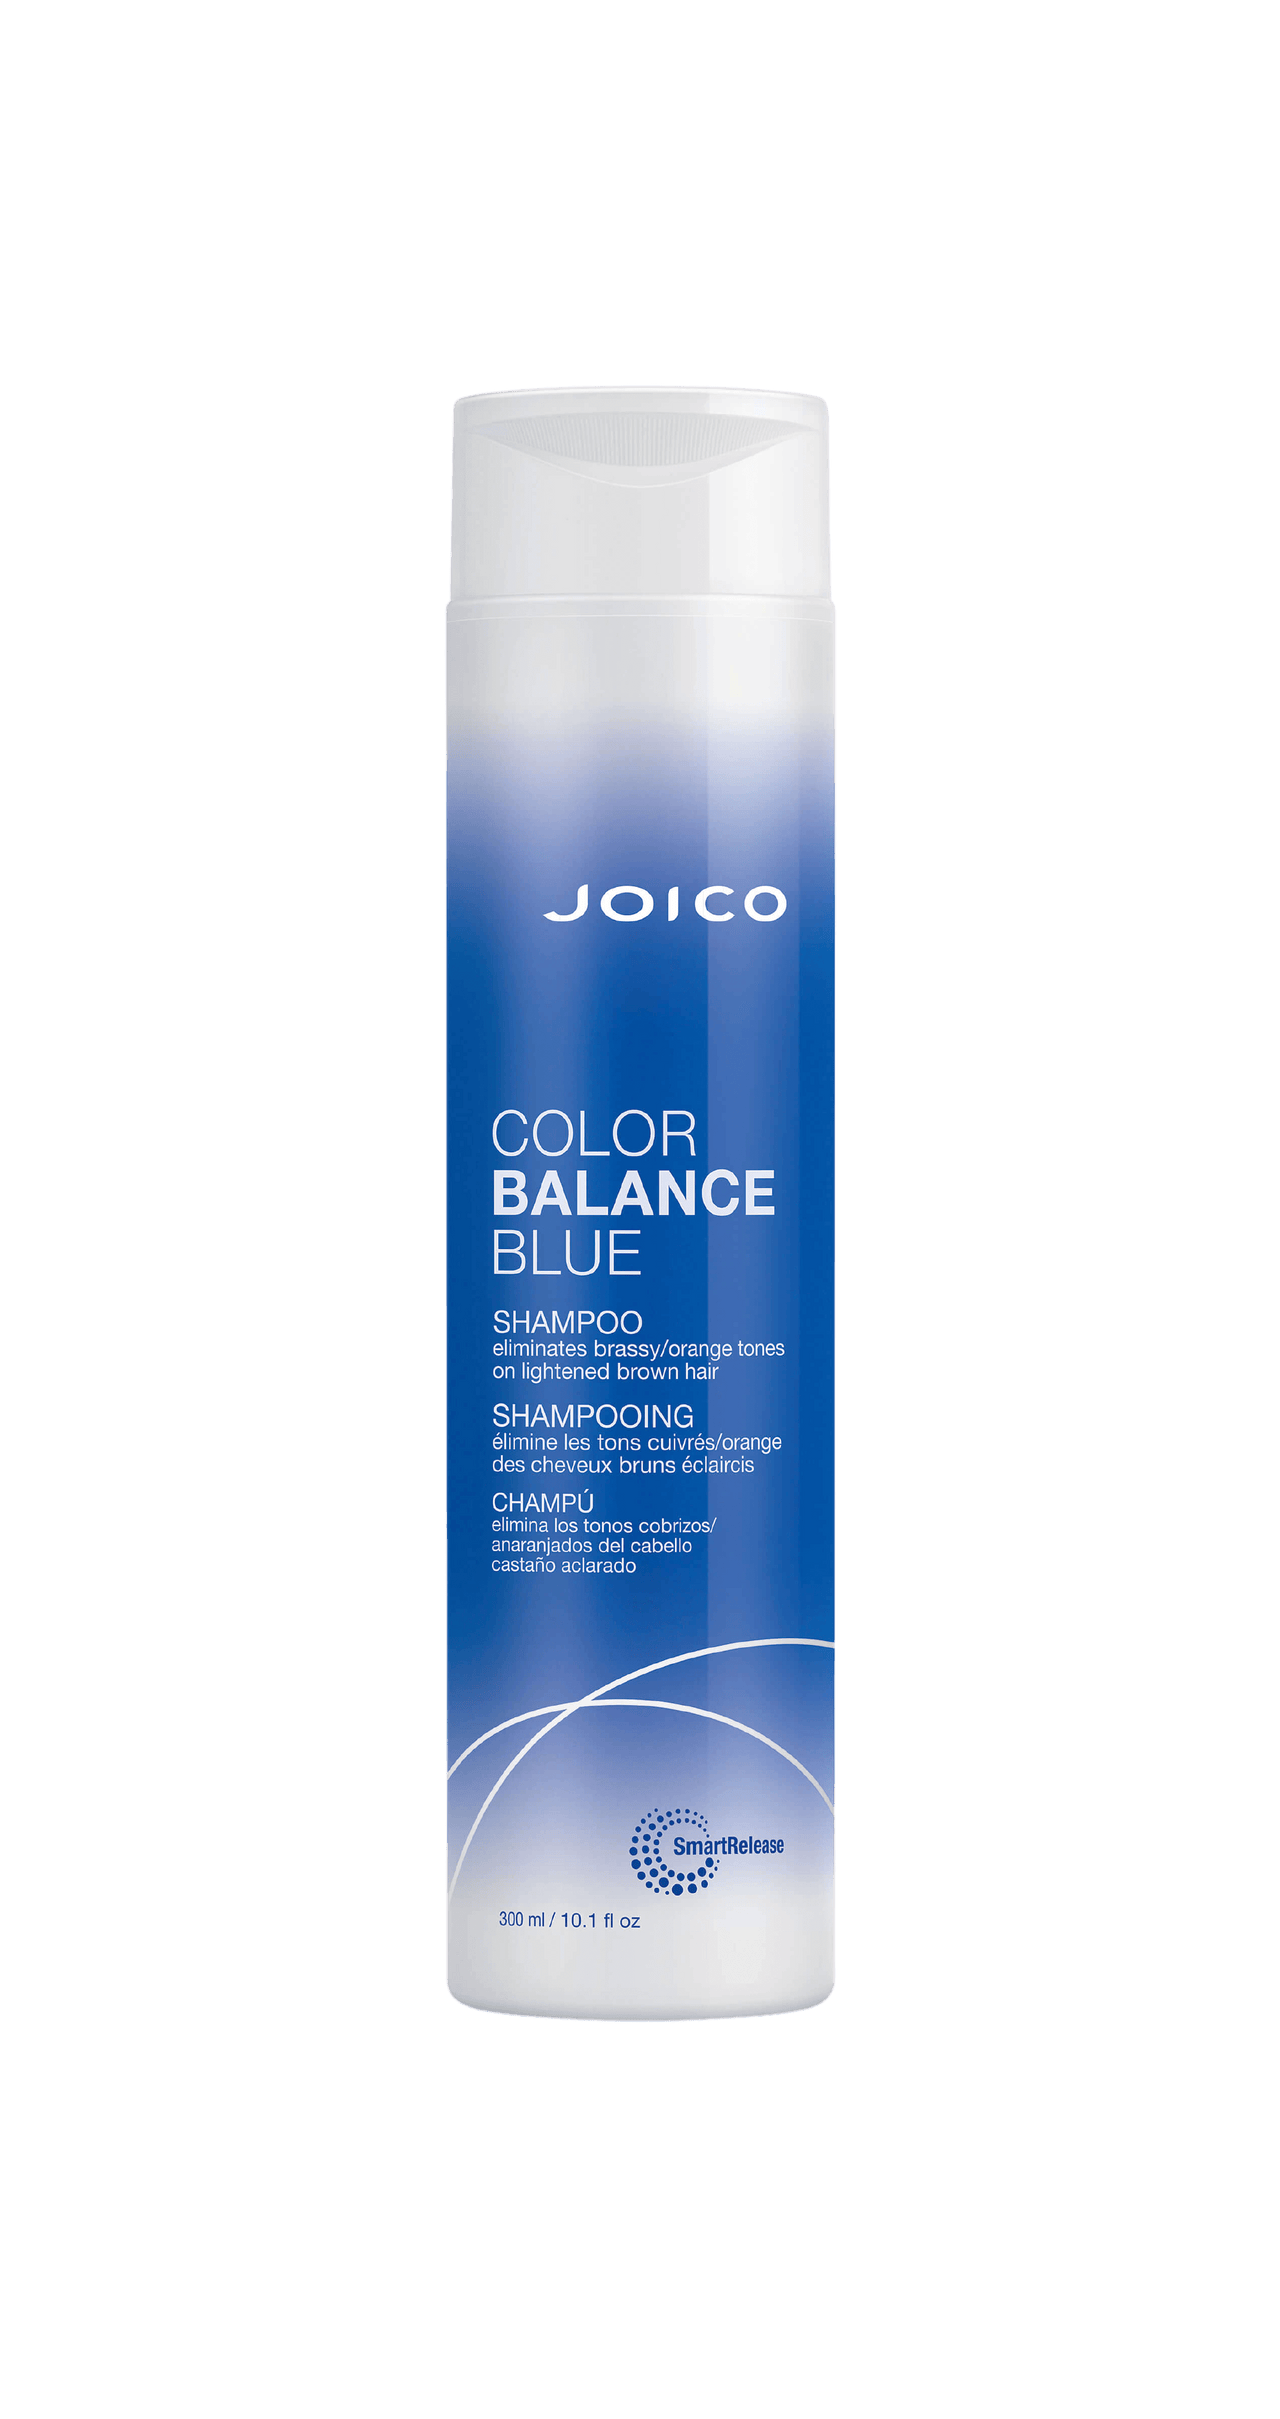 Joico Color Balance Blue Shampoo 300mL Bottle